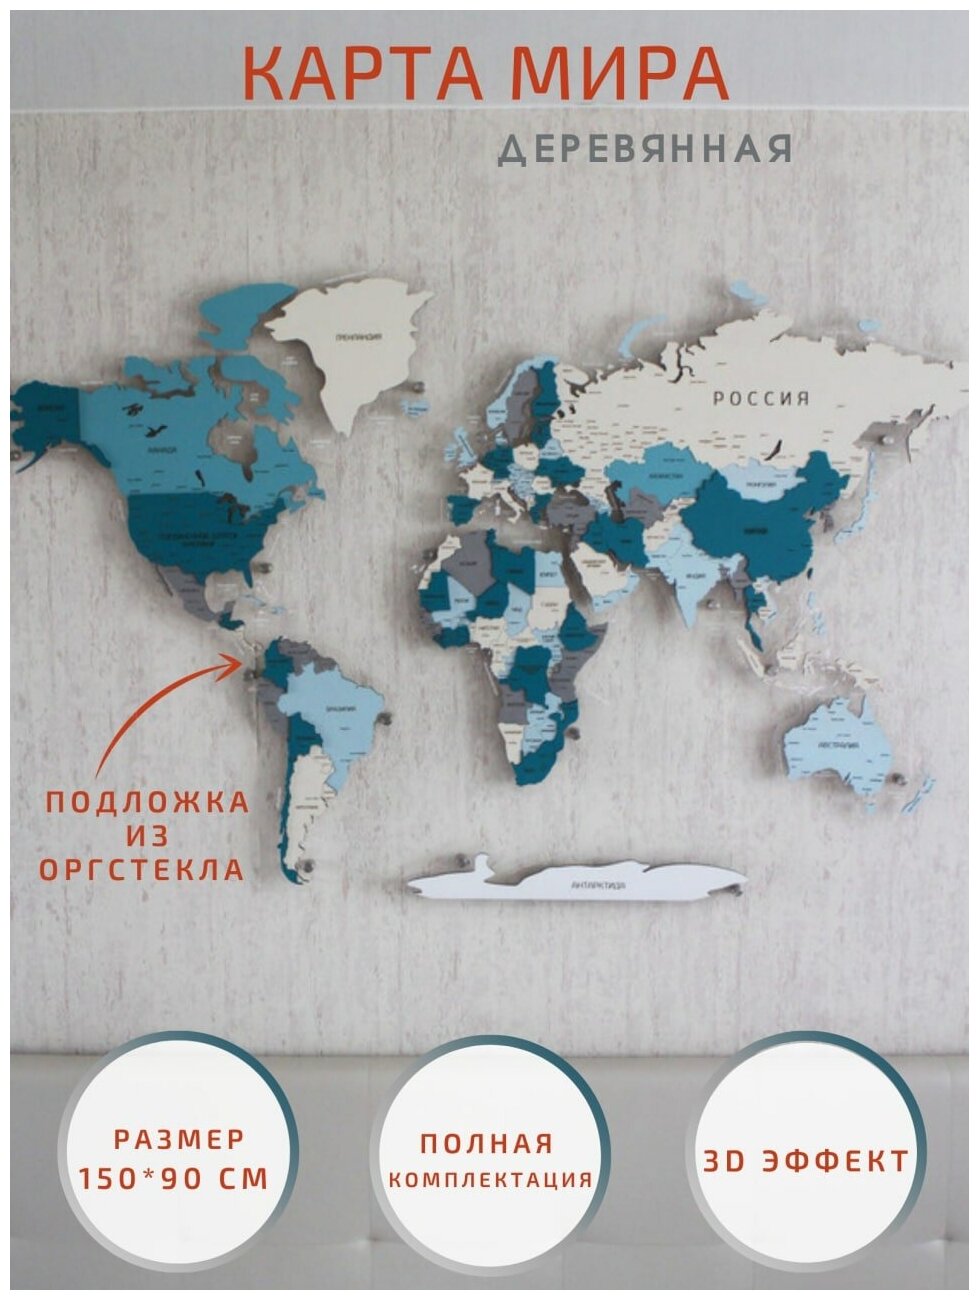 Карта мира из дерева настенная 150×90 см, деревянная, интерьерная географическая на стену